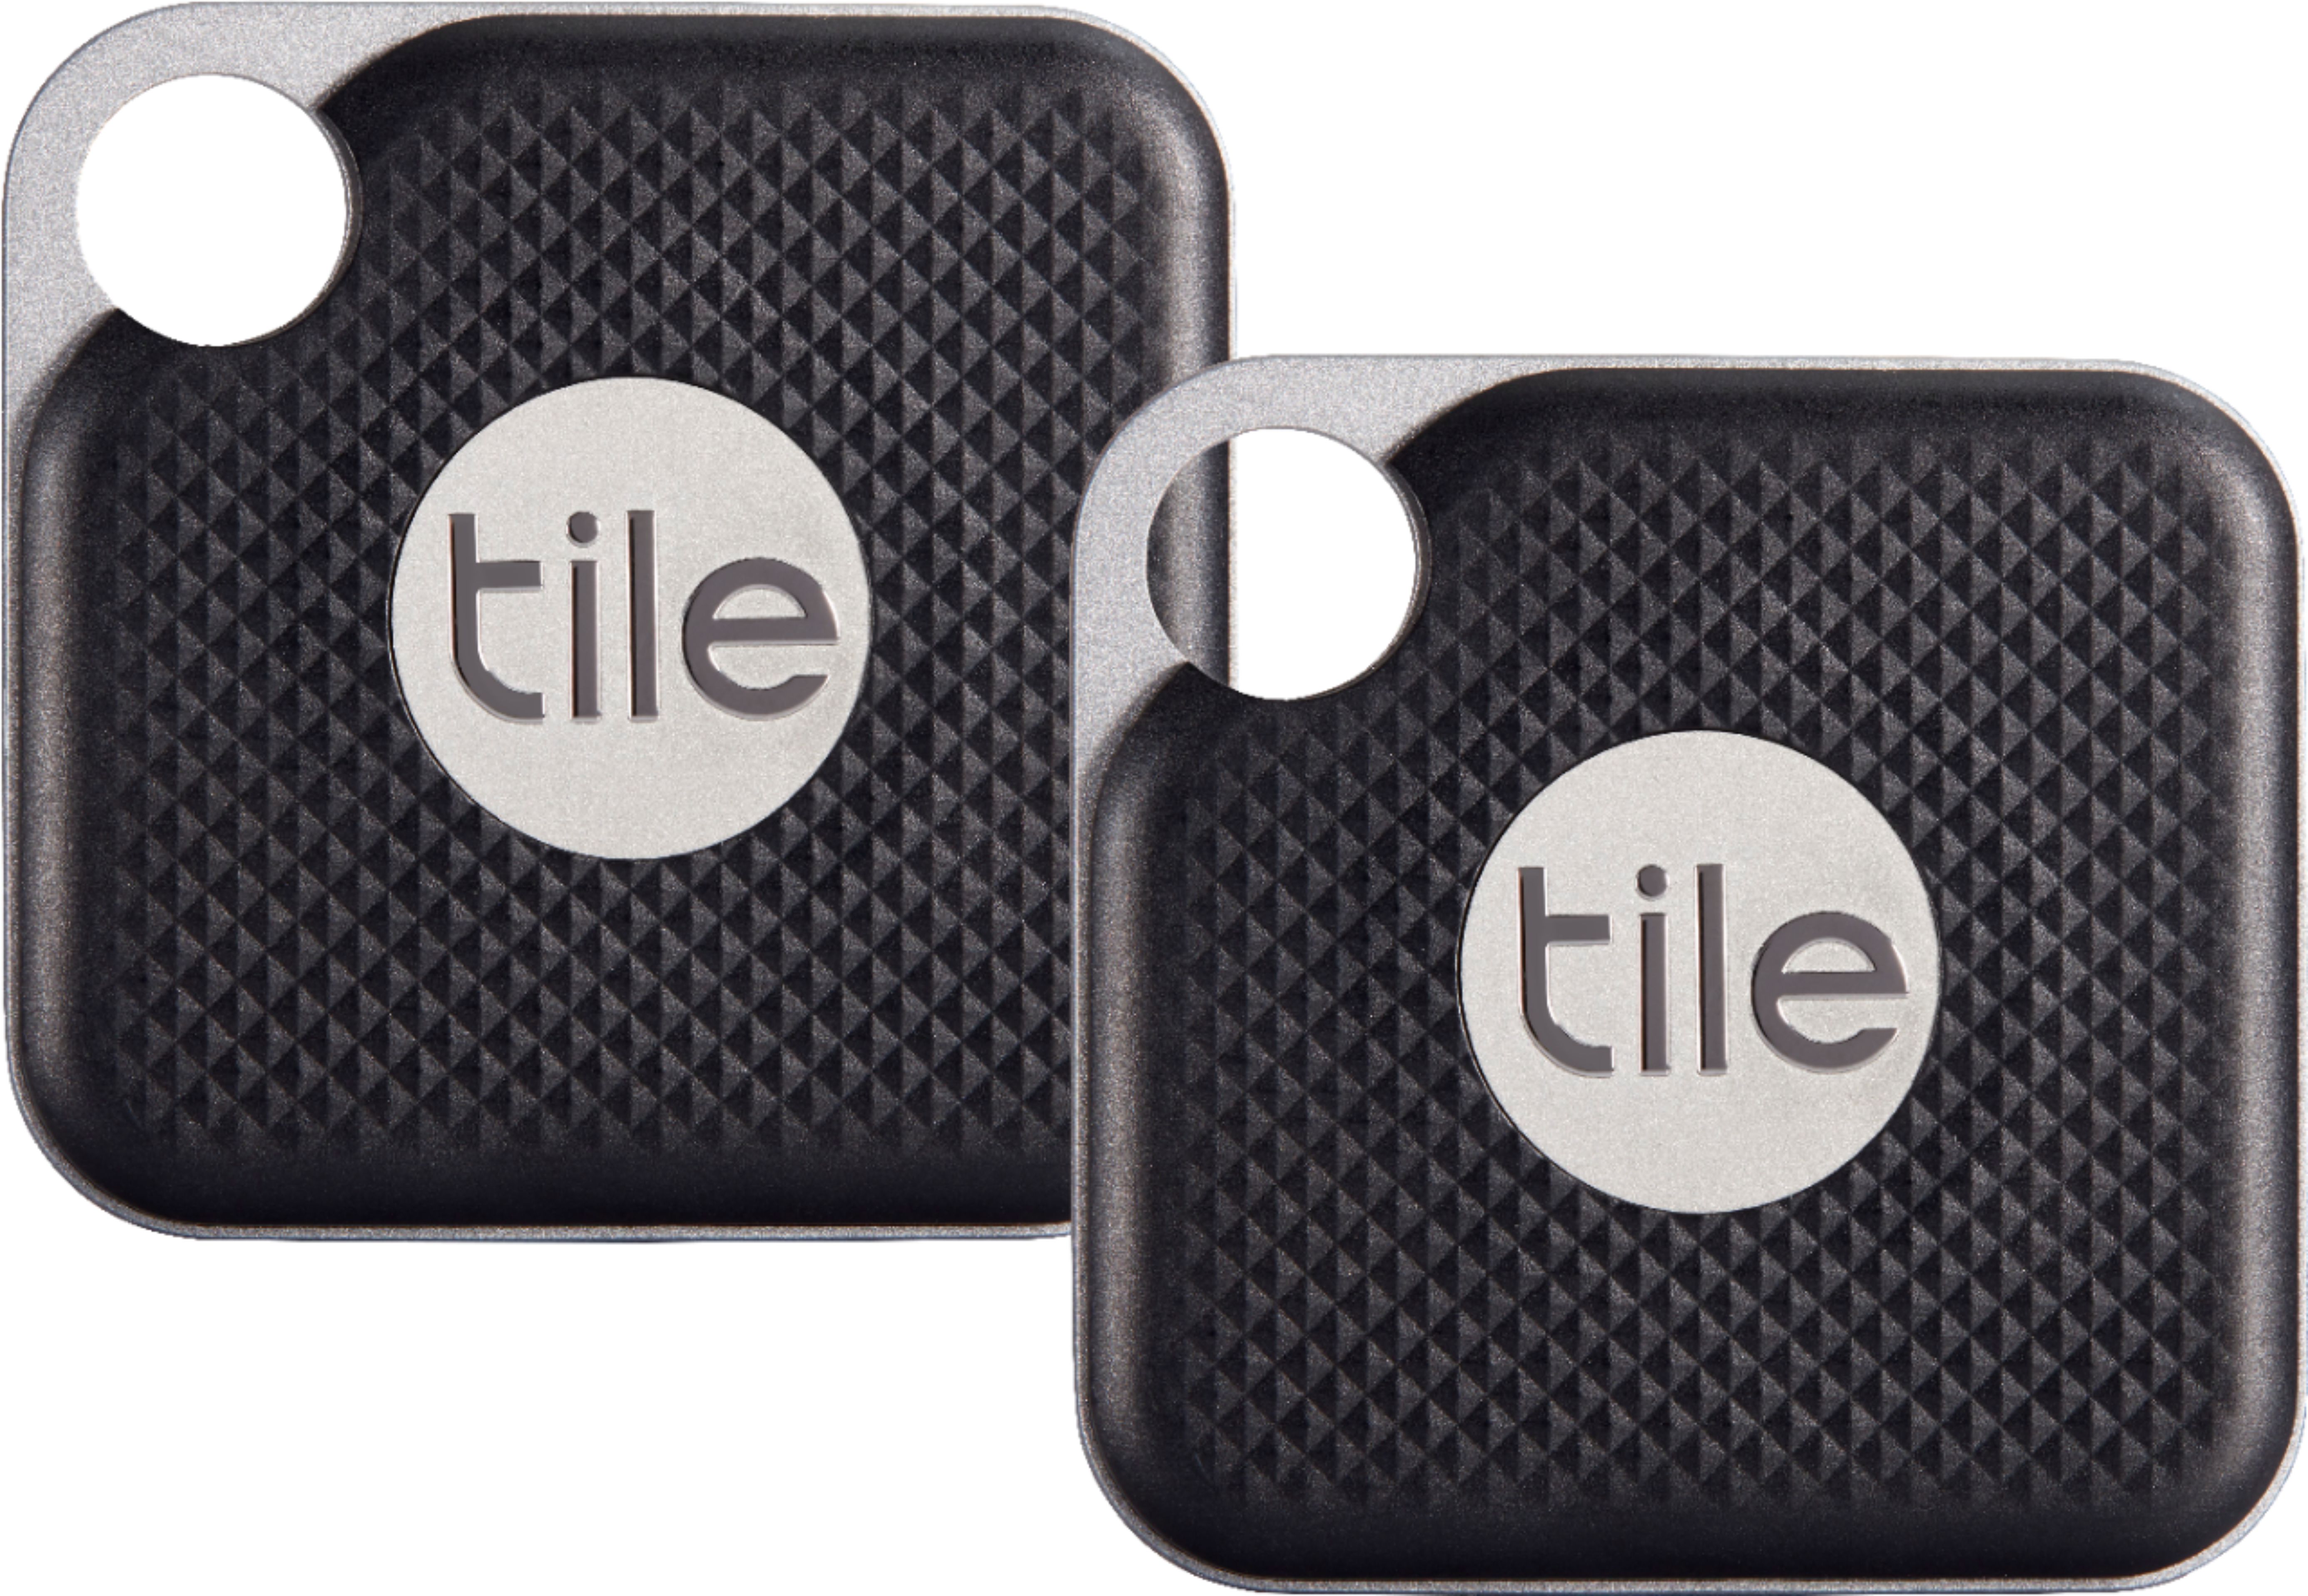 Angle View: Tile Pro Item Tracker 2-Tiles - Black